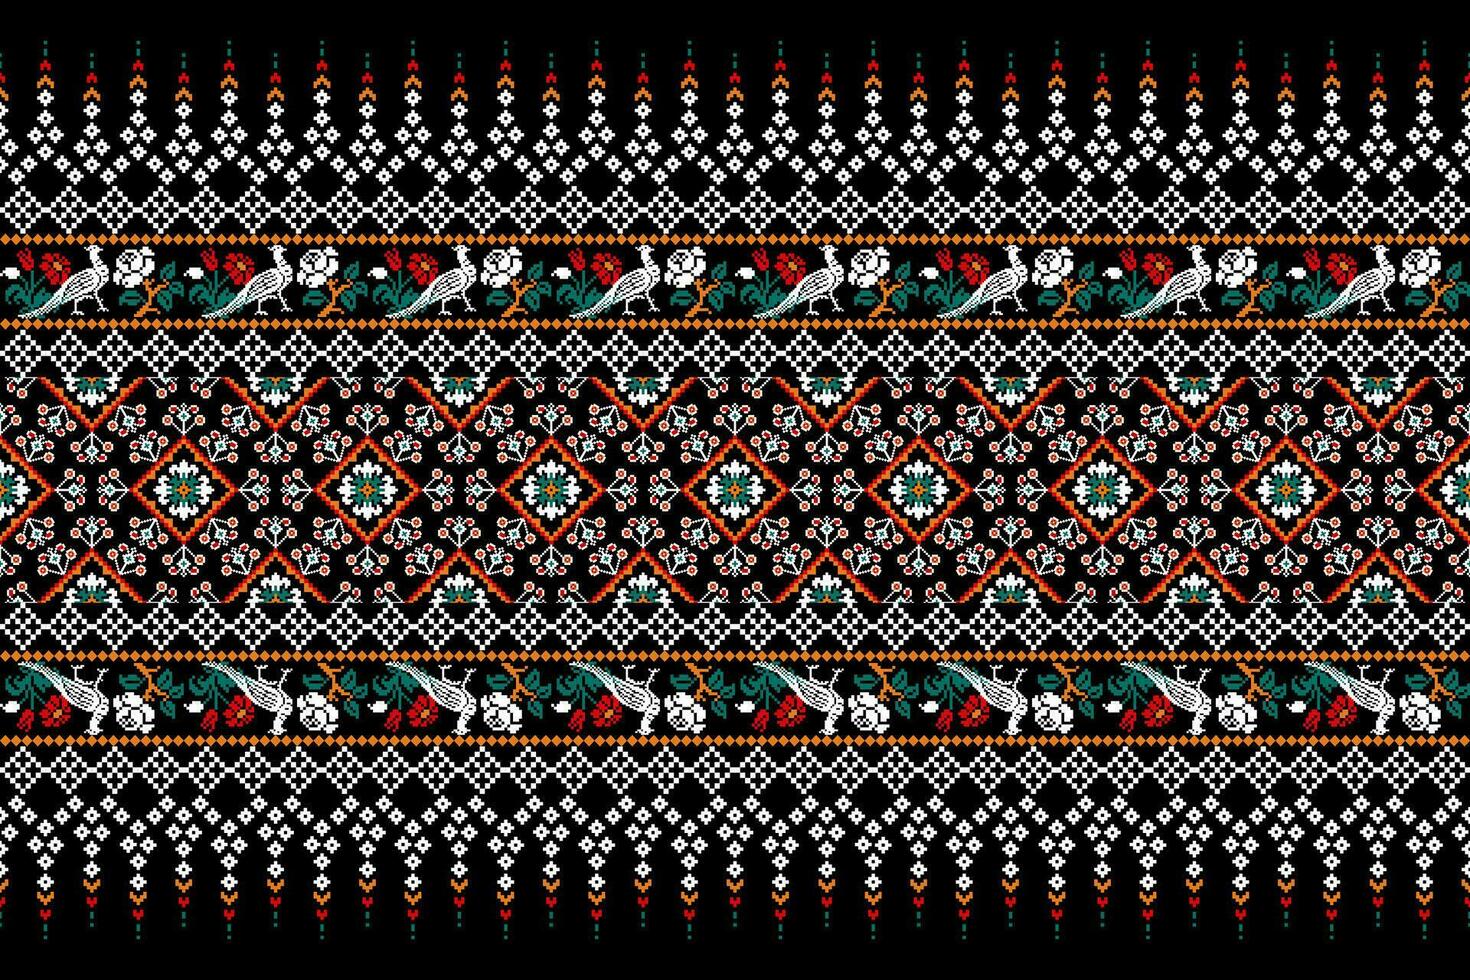 bloemen kruis steek borduurwerk Aan zwart achtergrond.geometrisch etnisch oosters patroon traditioneel.azteken stijl abstract vector illustratie.ontwerp voor textuur, stof, kleding, verpakking, decoratie, sarong.